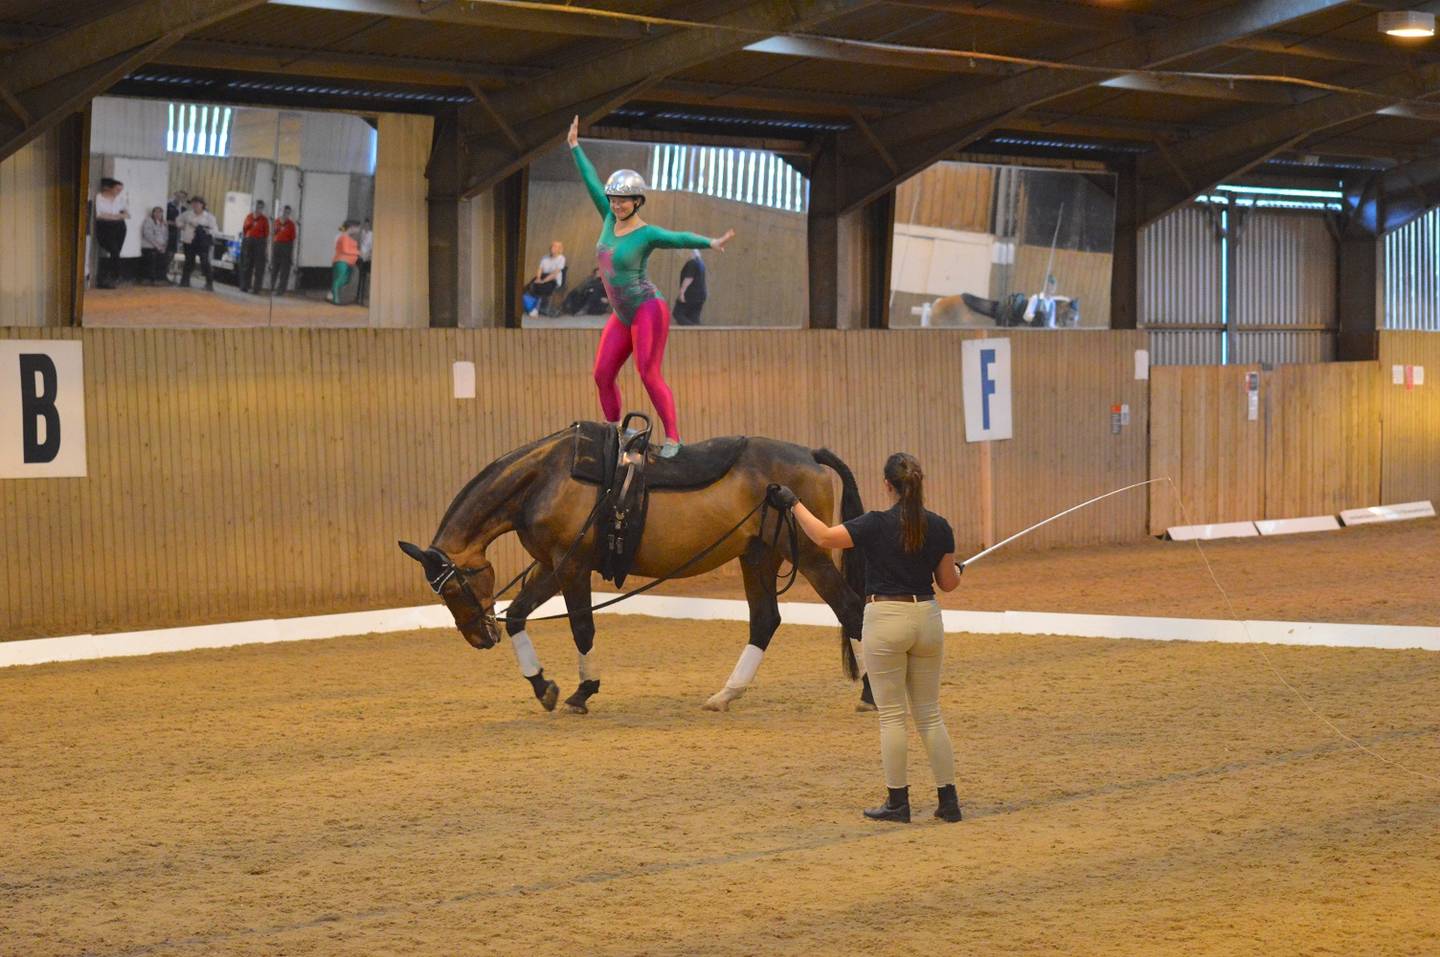 Lizie Bennett performing vault move on horseback